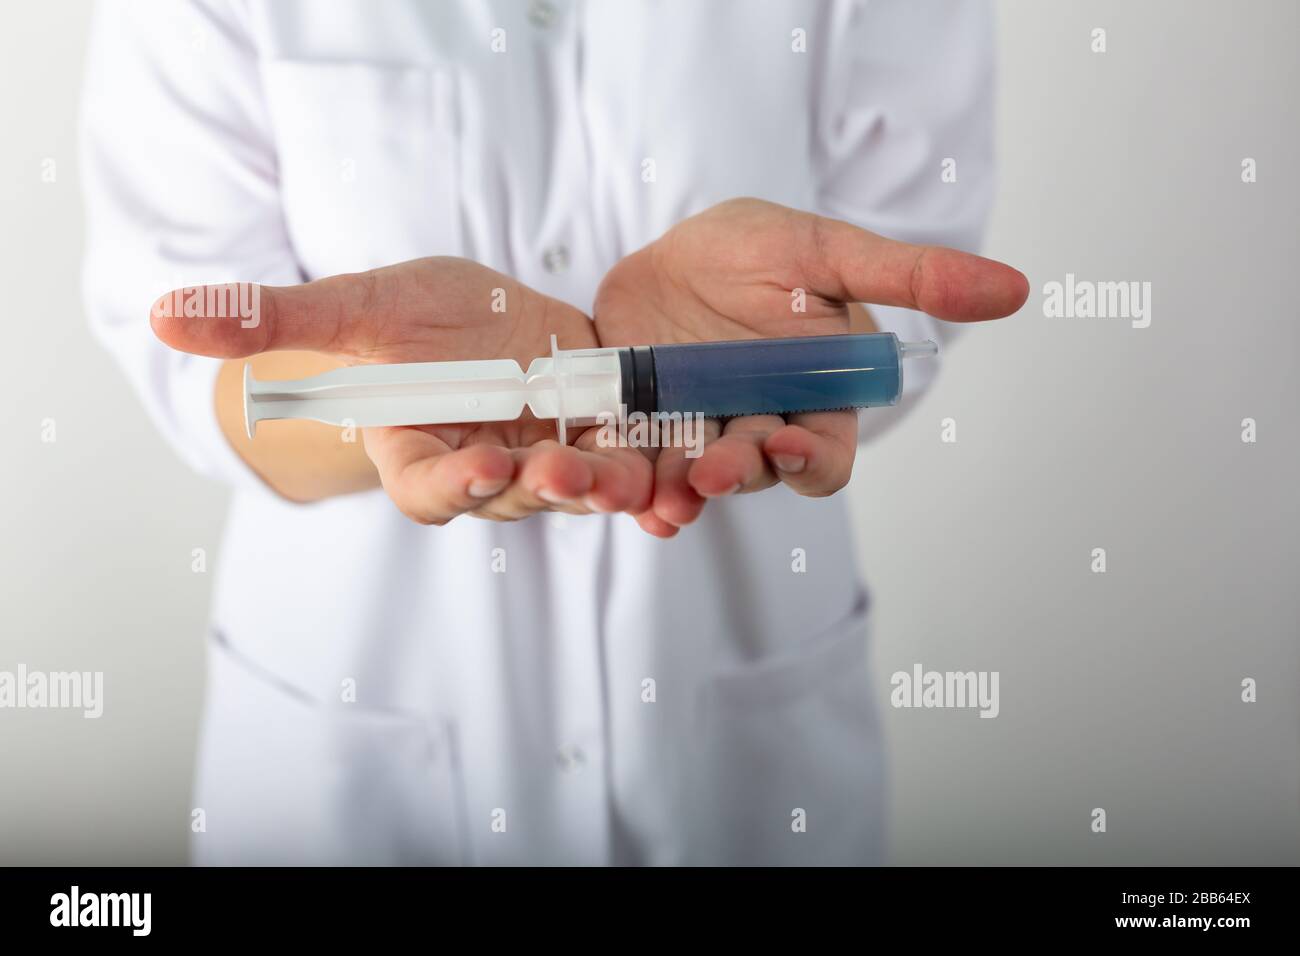 Mädchen in einem medizinischen Mantel hält eine große Spritze mit blauer Flüssigkeit - Coronaviris-Impfstoff Stockfoto